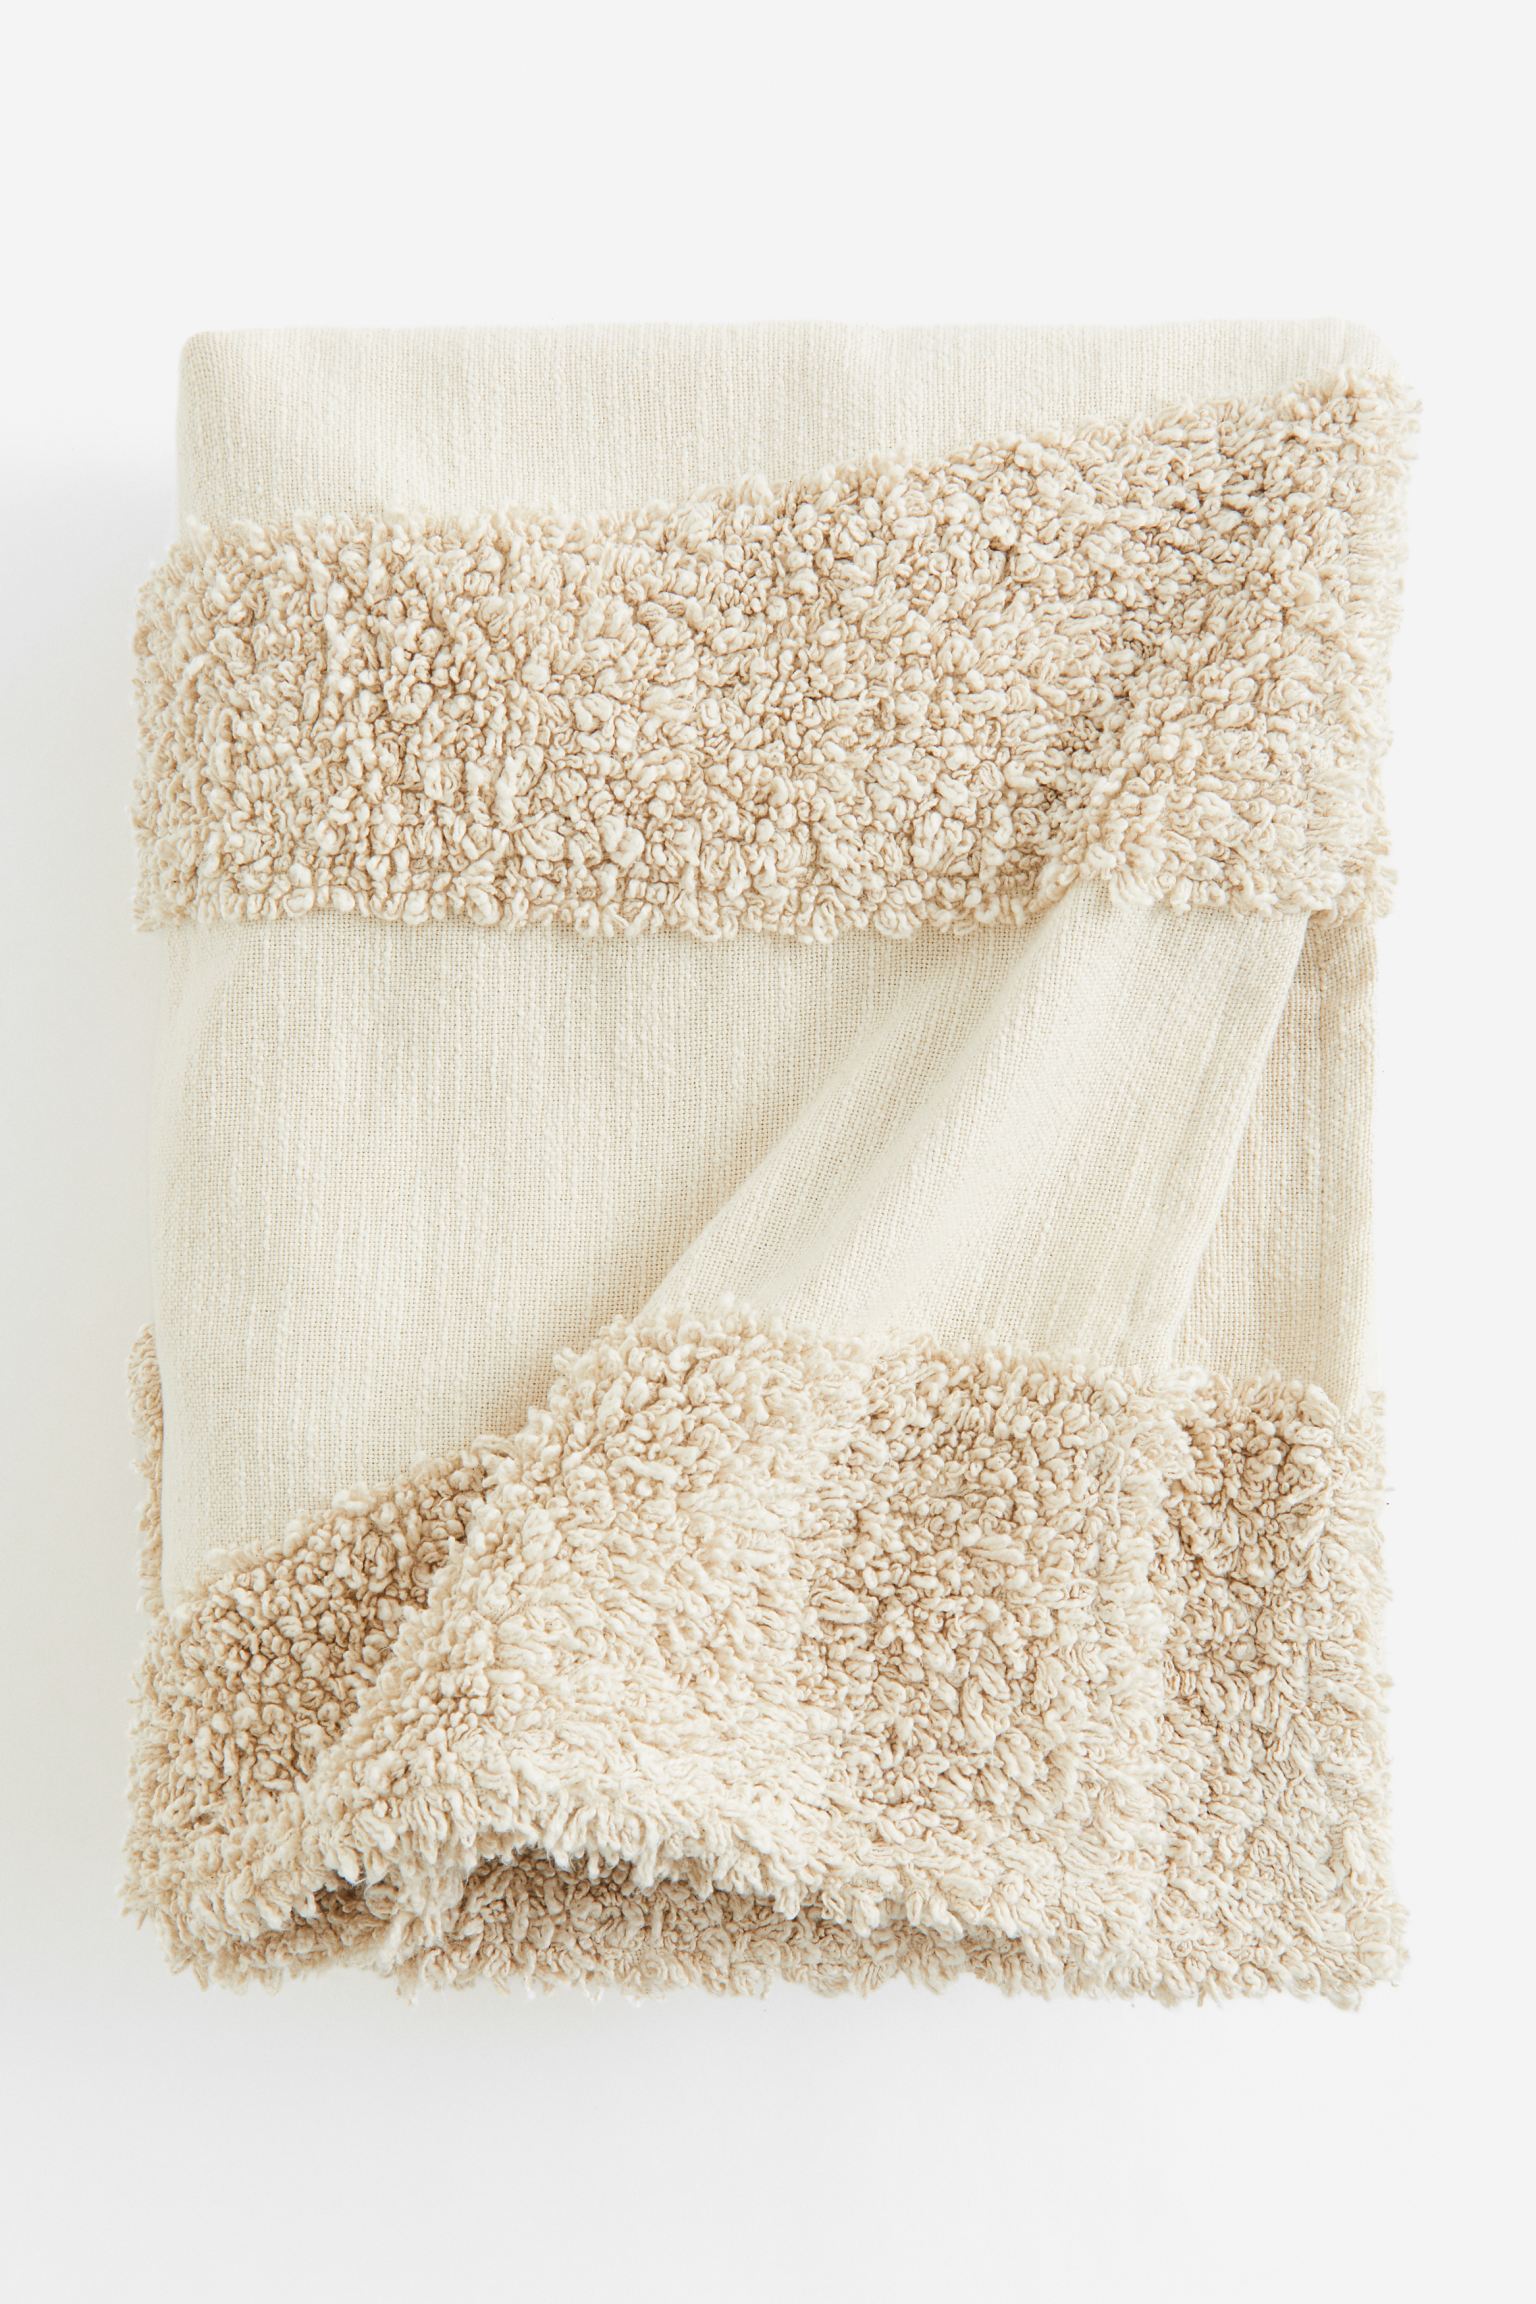 Покрывало H&M Home Tufted Cotton, кремовый/светло-бежевый фотографии